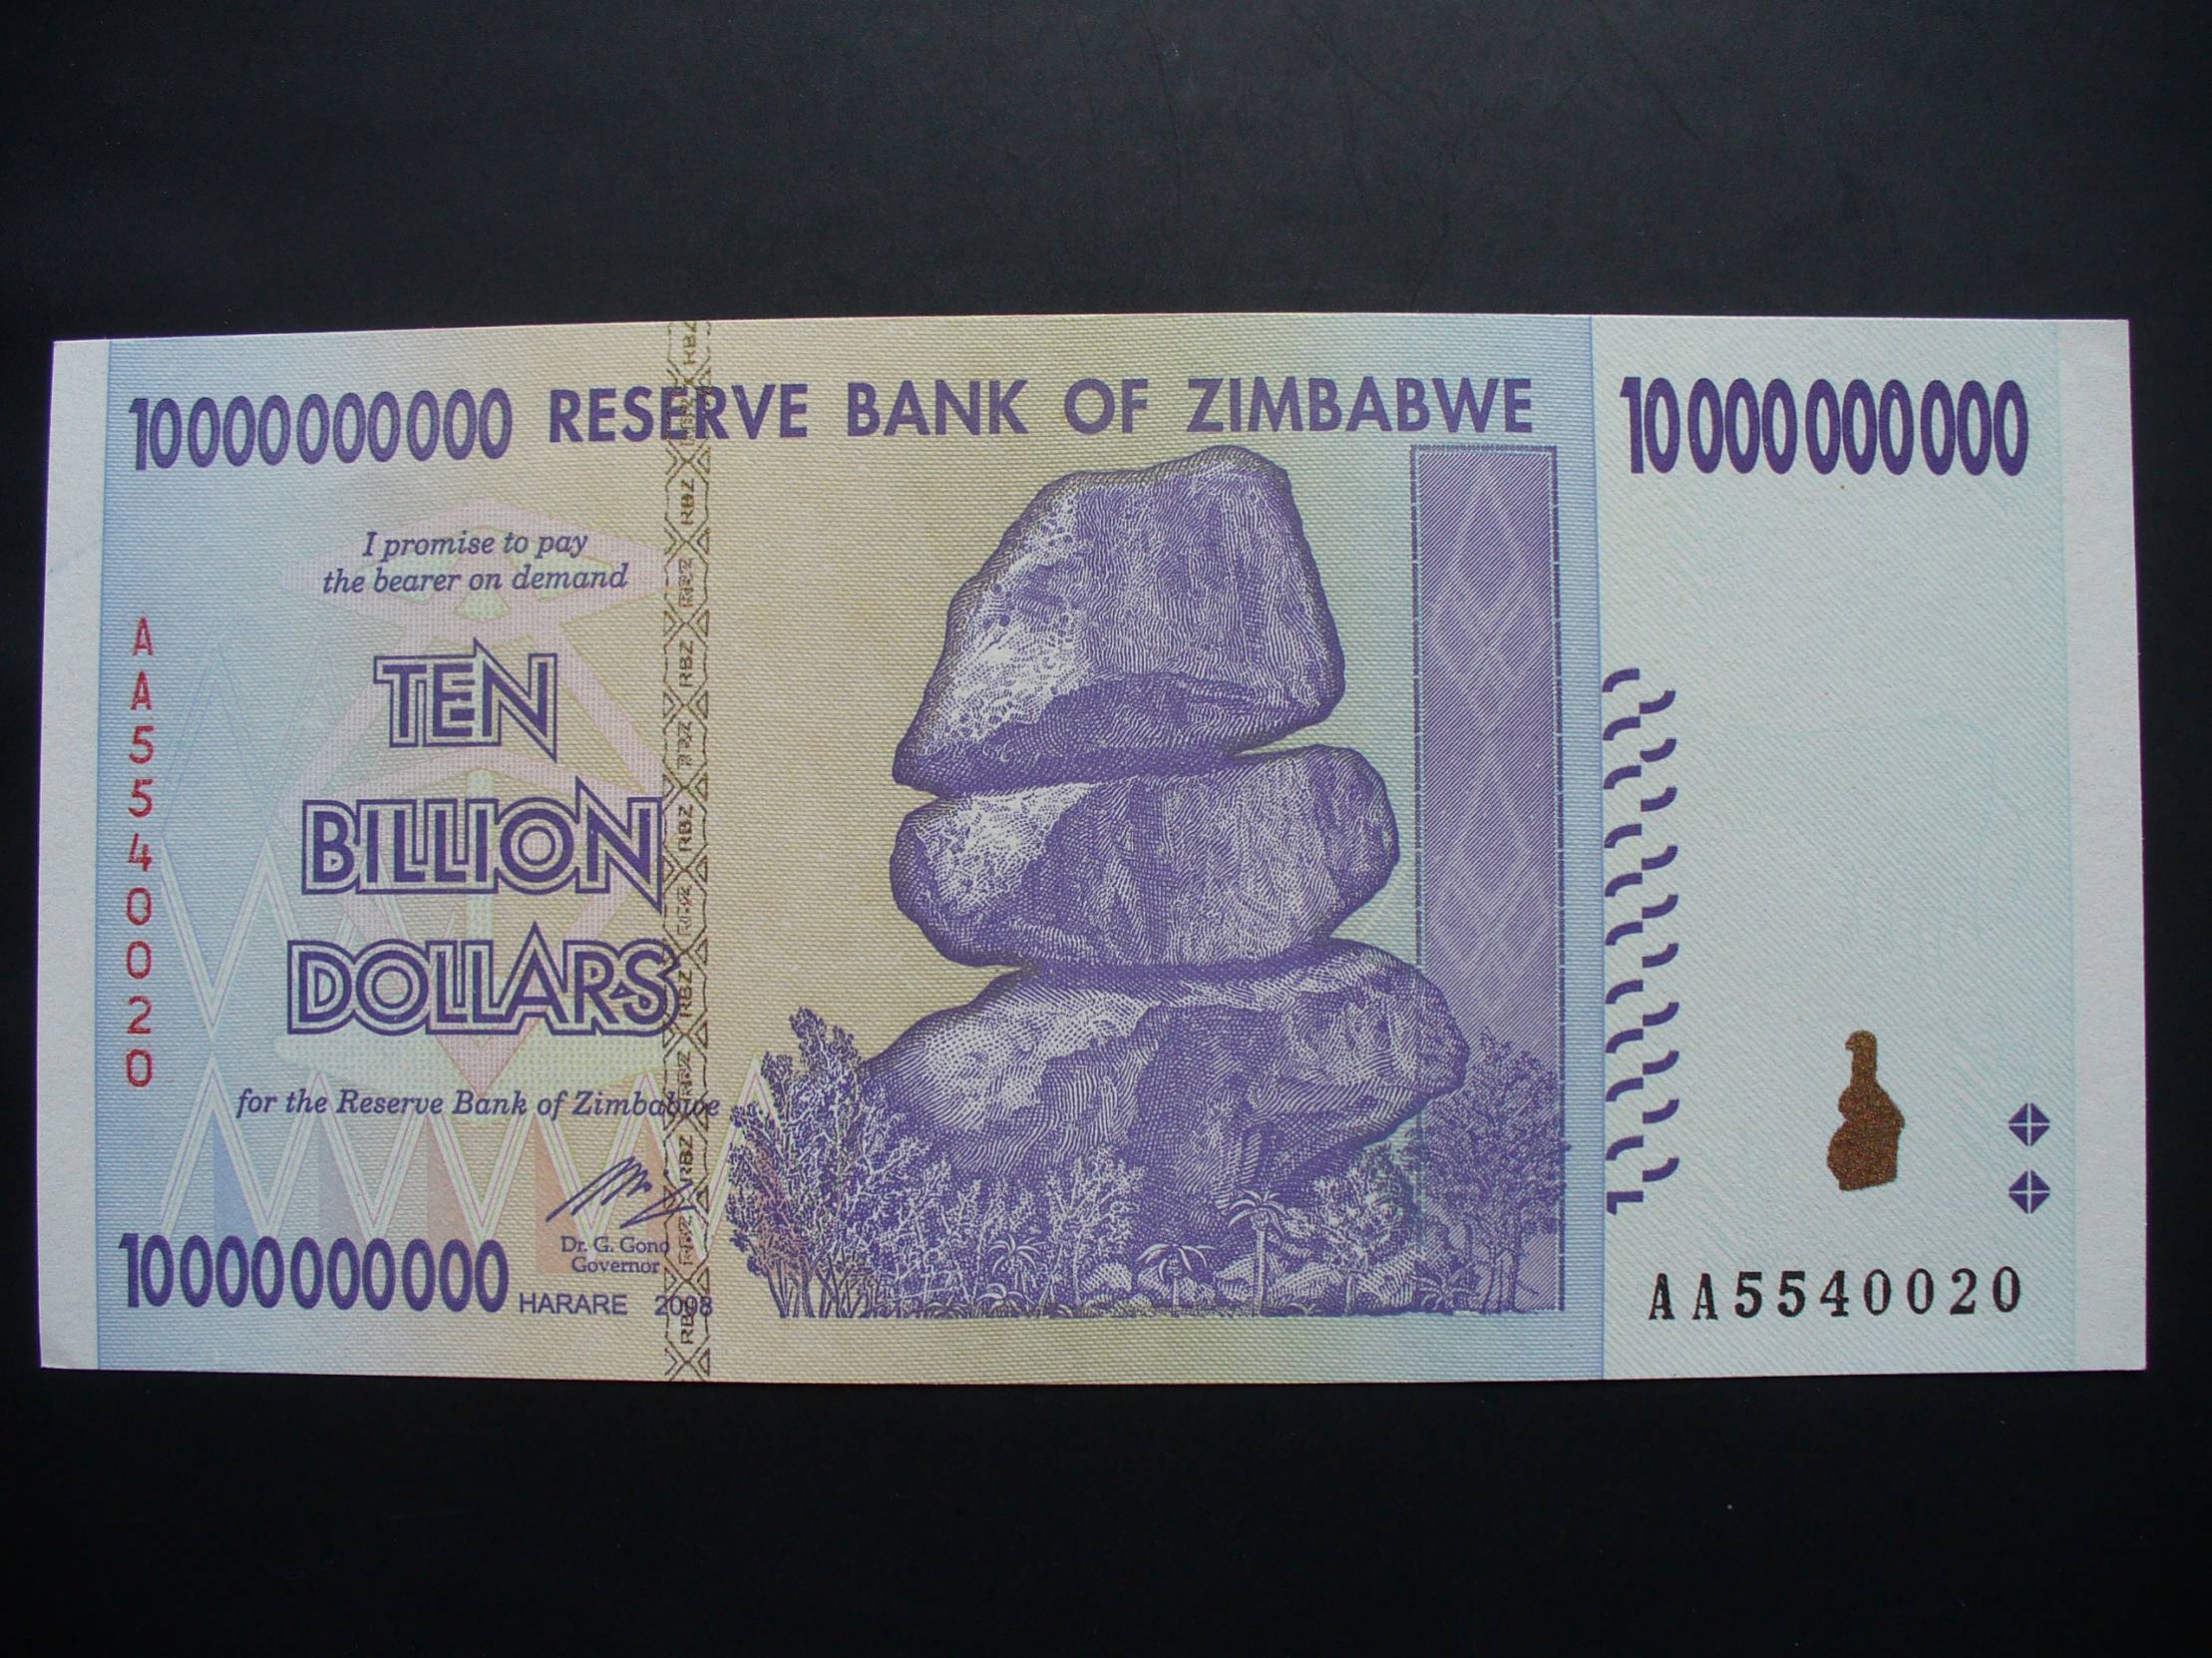 10000000000 долларов. Зимбабве купюра 100 триллионов. Купюра 10 триллионов долларов Зимбабве. Купюра 100 триллионов долларов Зимбабве. Зимбабвийский доллар самая крупная купюра.